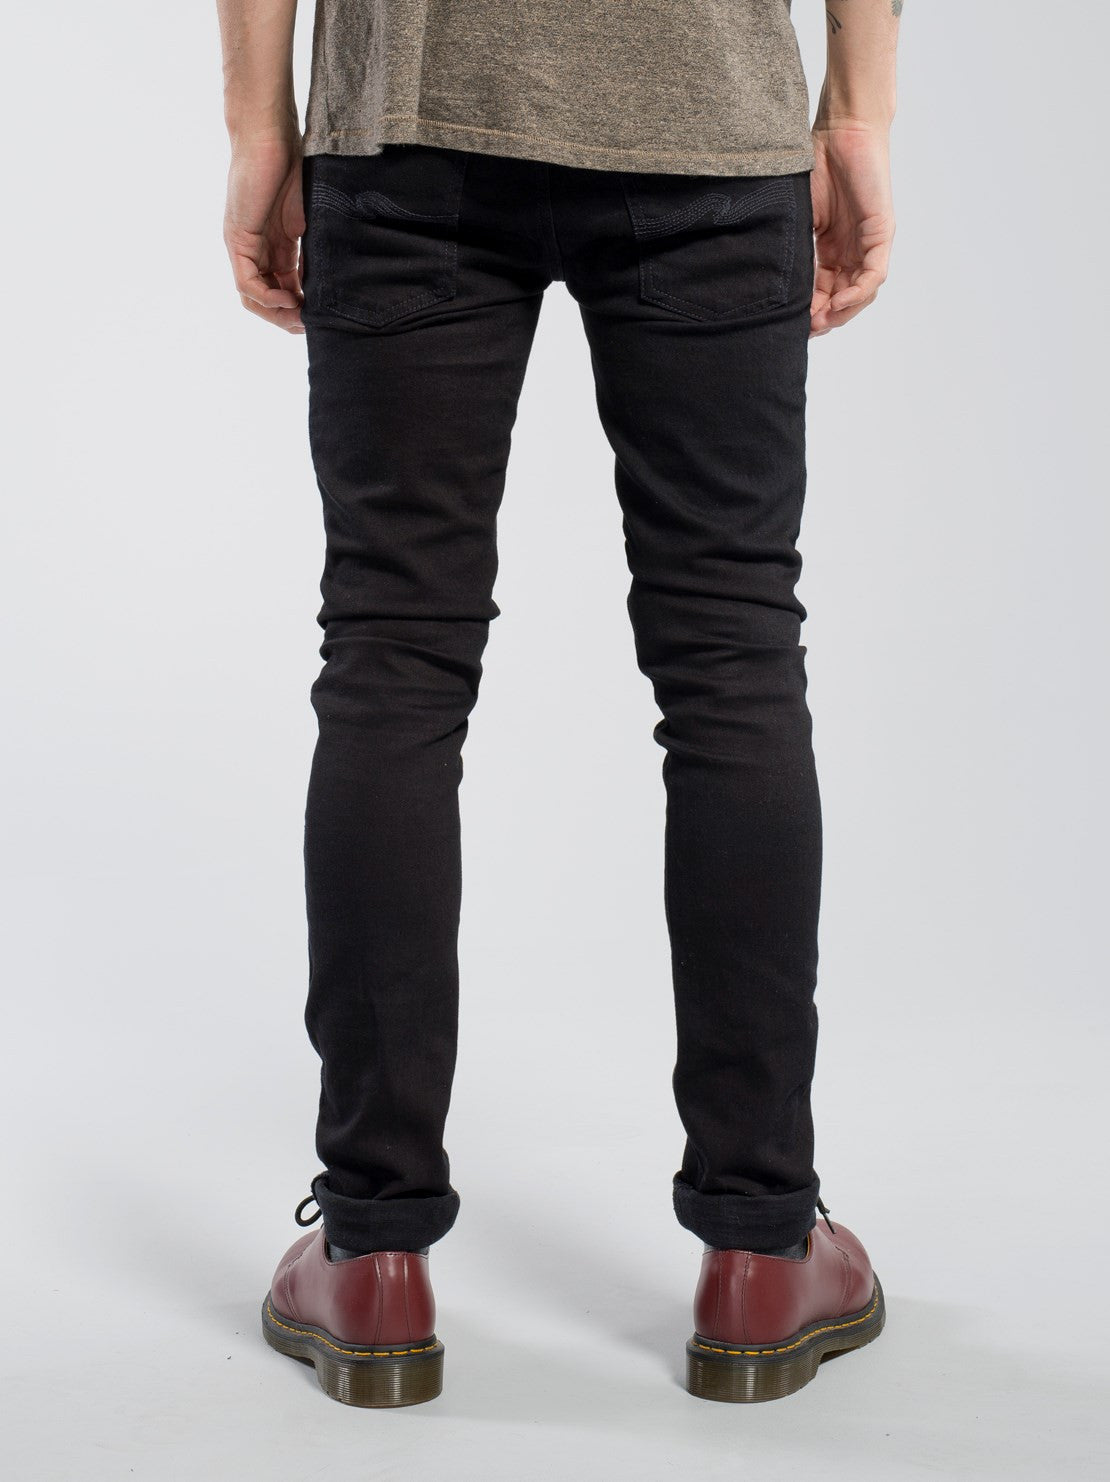 black velvet bell bottom pants